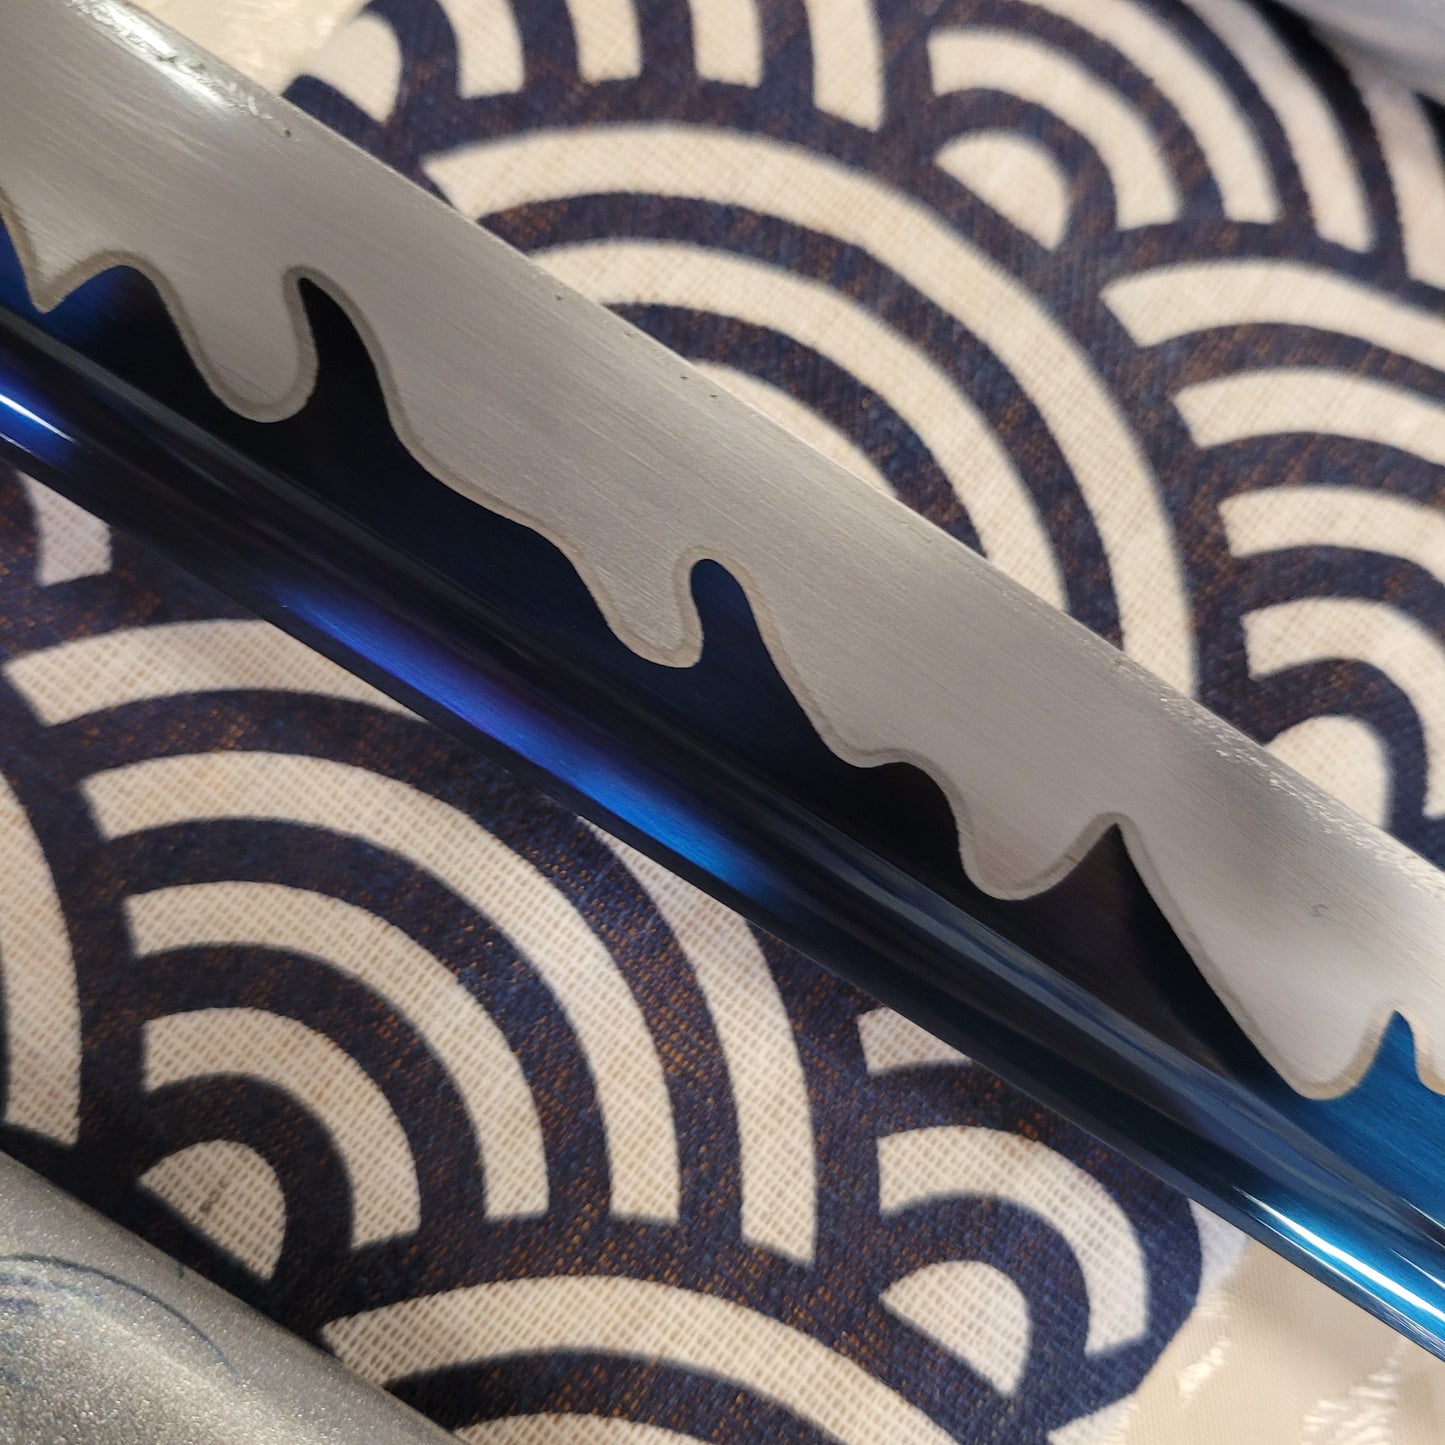 2-Sword Set- Blue Wave Carbon Steel, Carp Theme